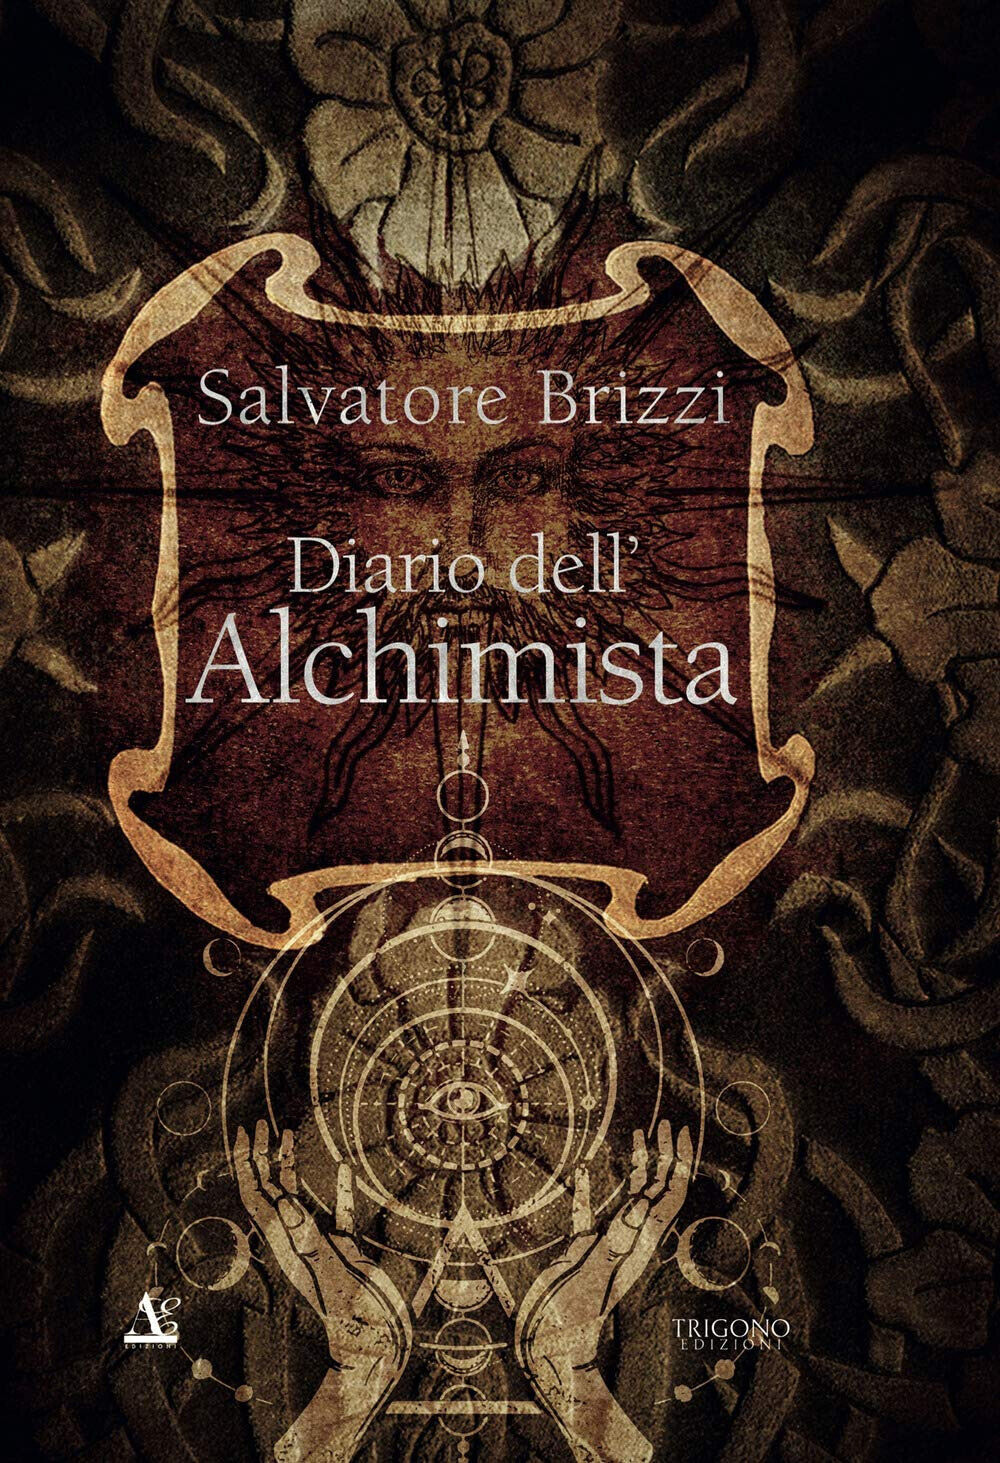 Diario dell alchimista - Salvatore Brizzi - Trigono, 2020 libro usato